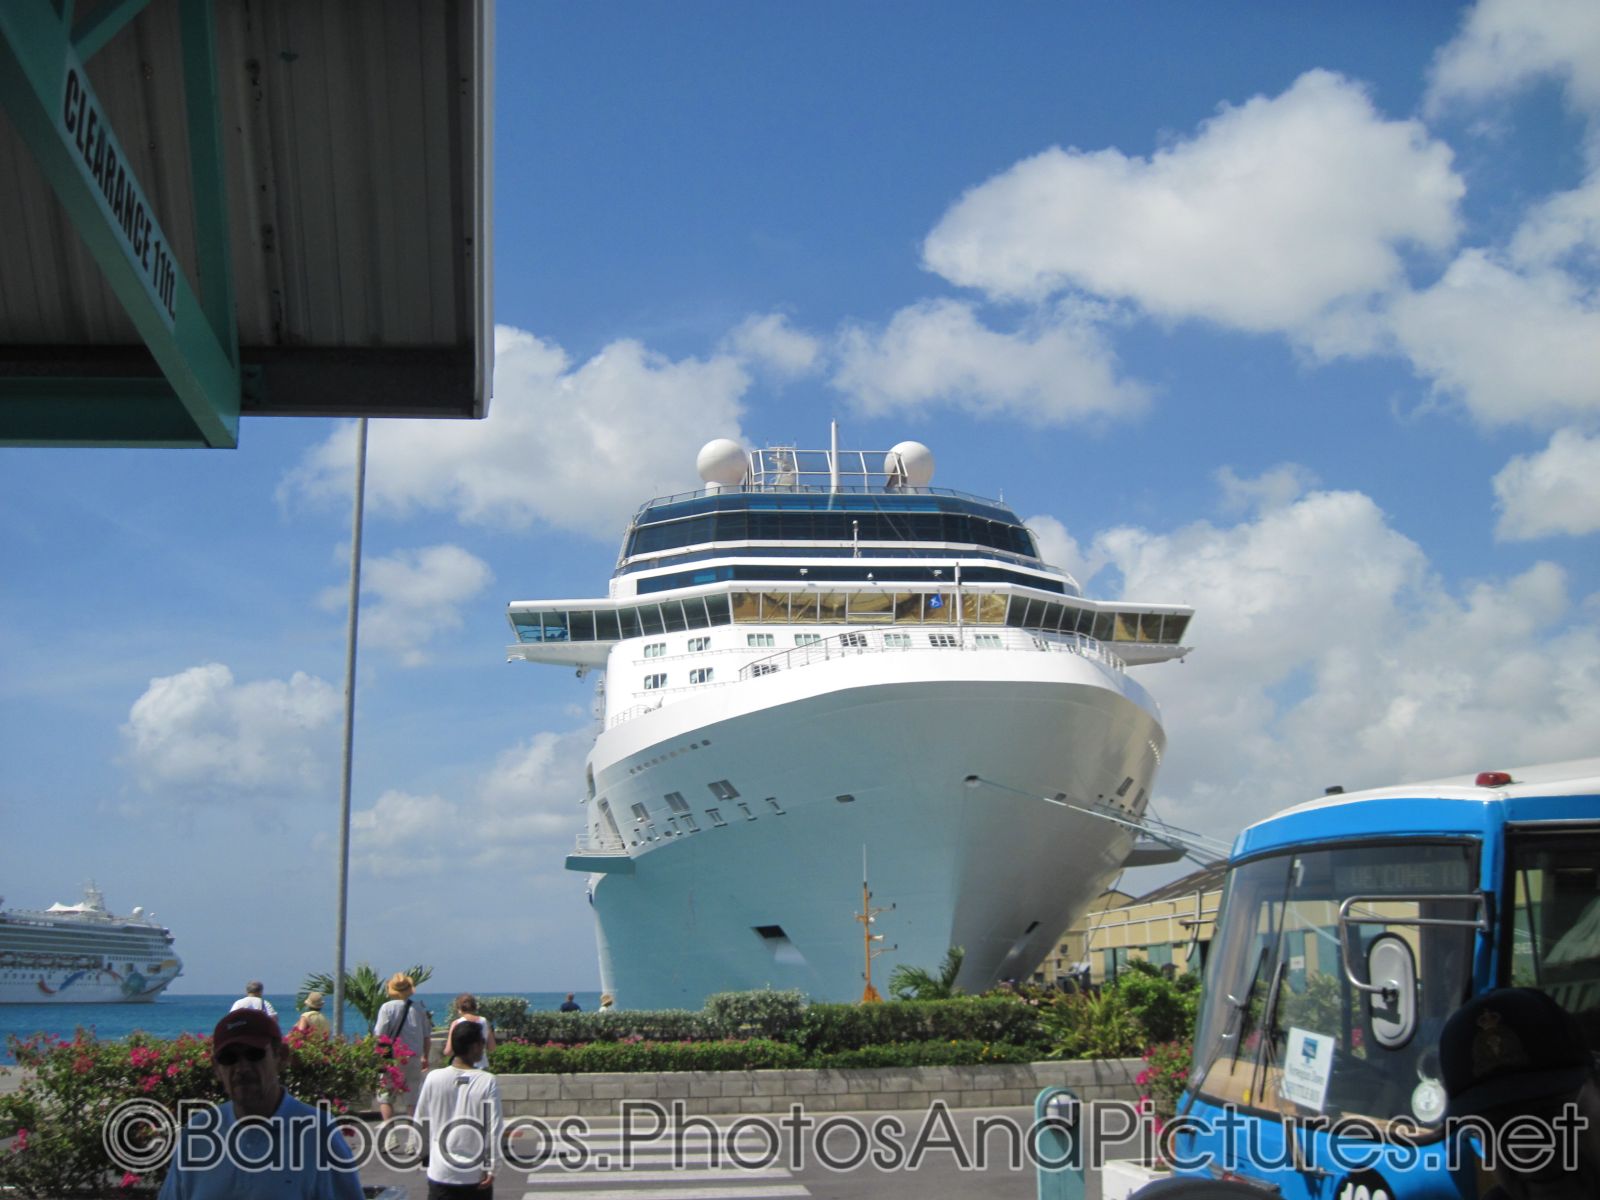 Celebrity Cruise ship docked at Bridgetown Cruise Terminal in Barbados.jpg
